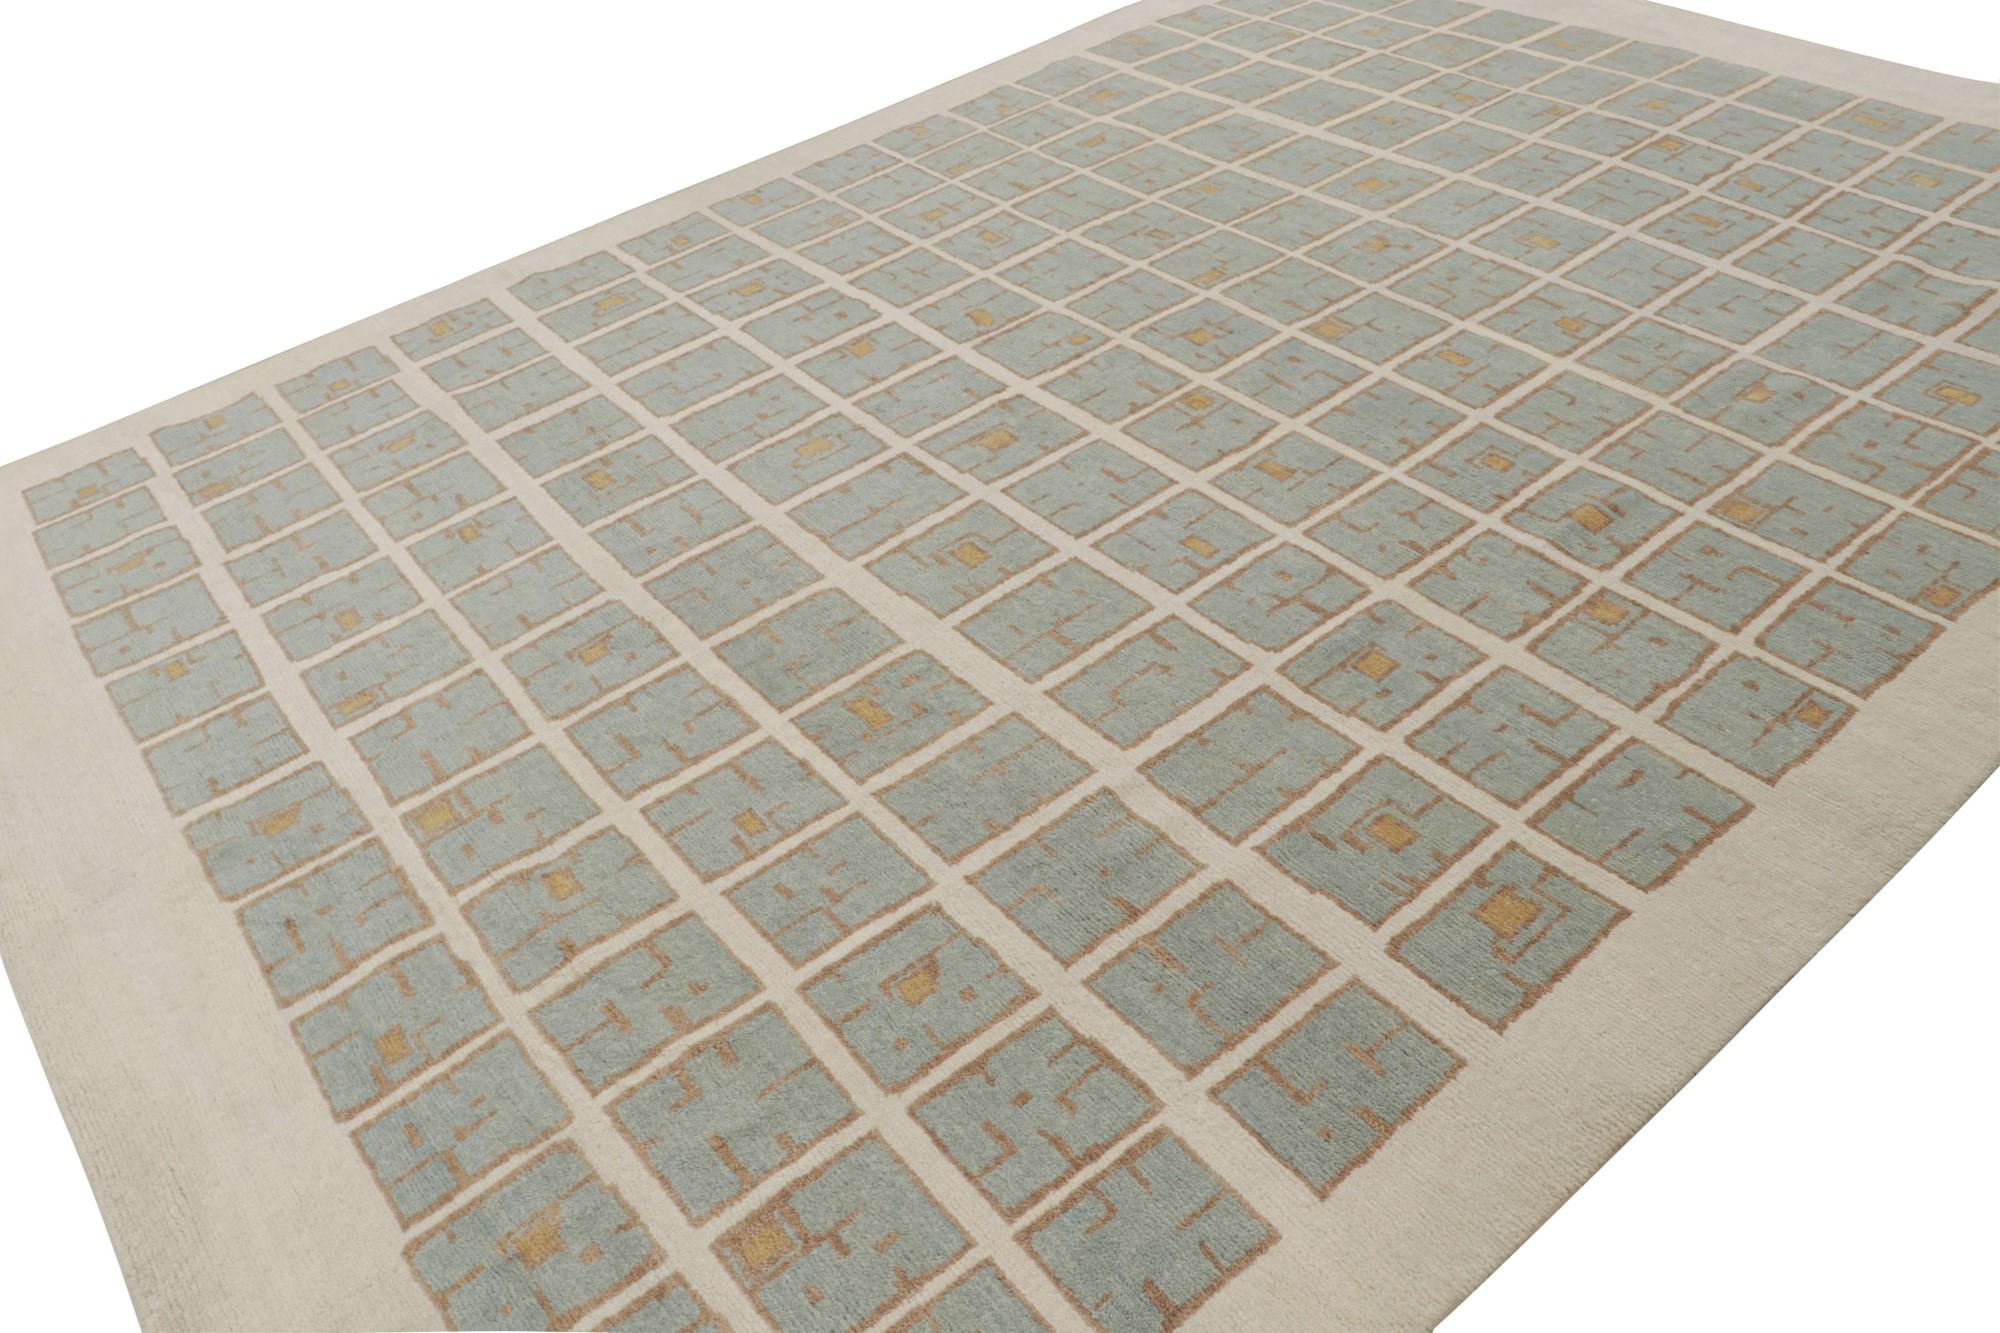 Cette ode 10x14 aux tapis Art déco français est le prochain ajout à la nouvelle collection Deco de Rug & Kilim. Noué à la main en laine.

Plus loin dans le Design :  

Cette pièce arbore le style déco des années 1920 avec des motifs géométriques